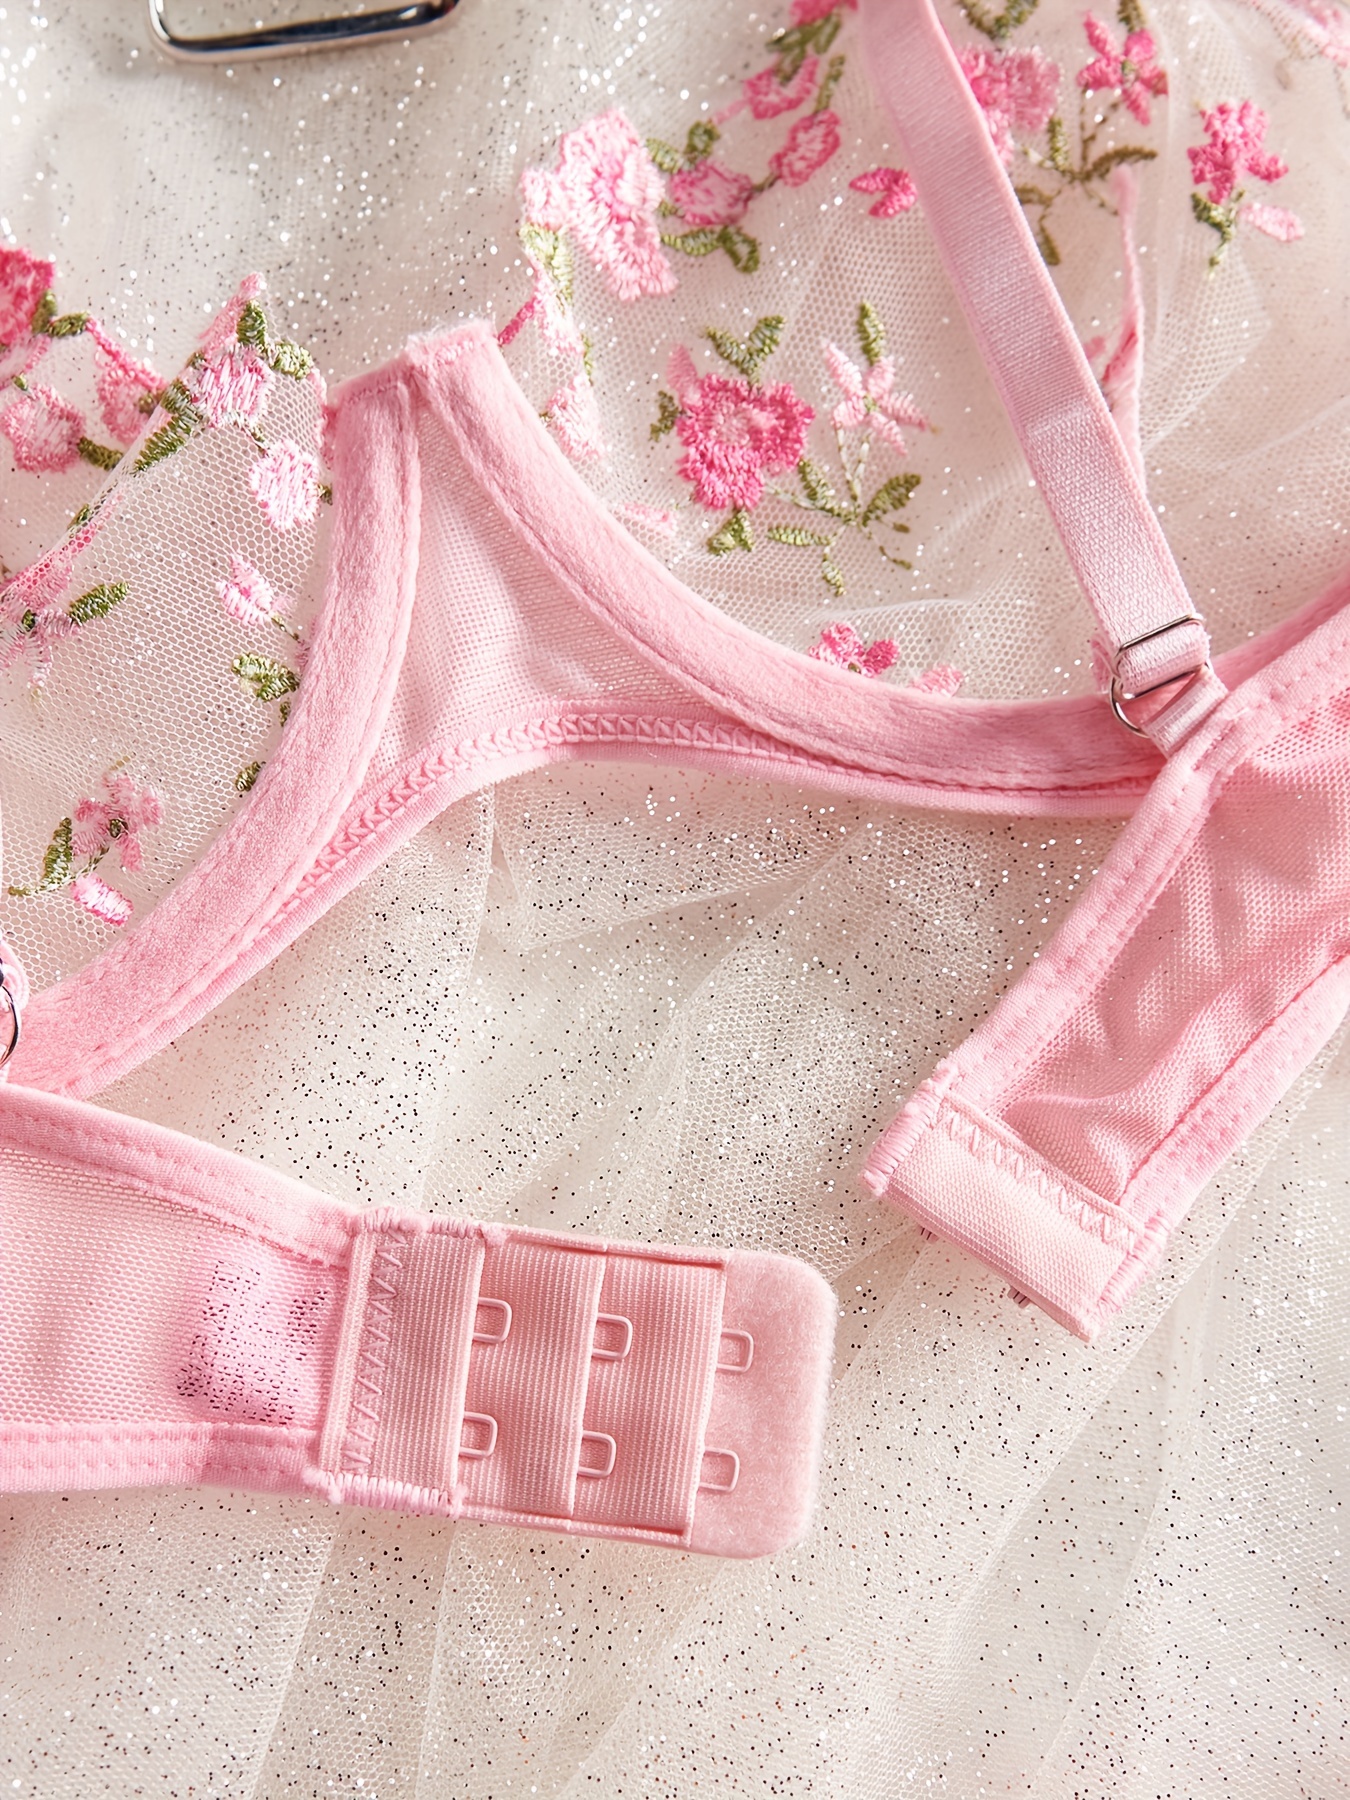 2 Piece Hot Pink Lace Bra & Panty Set